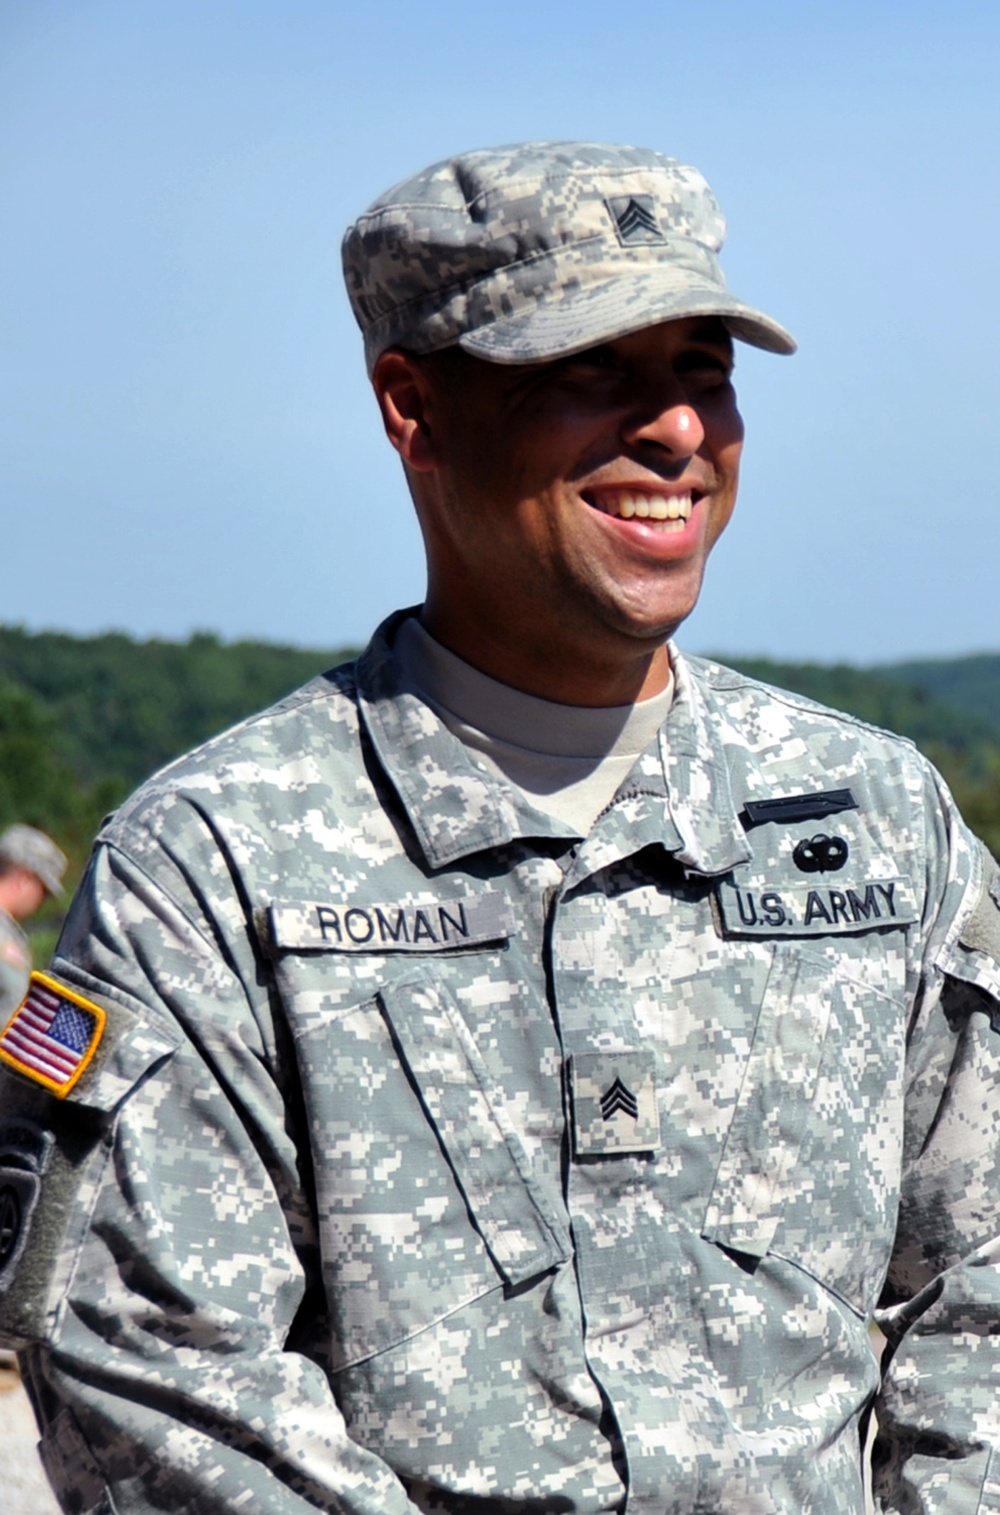 Cadre in focus: Sgt. Eric Roman